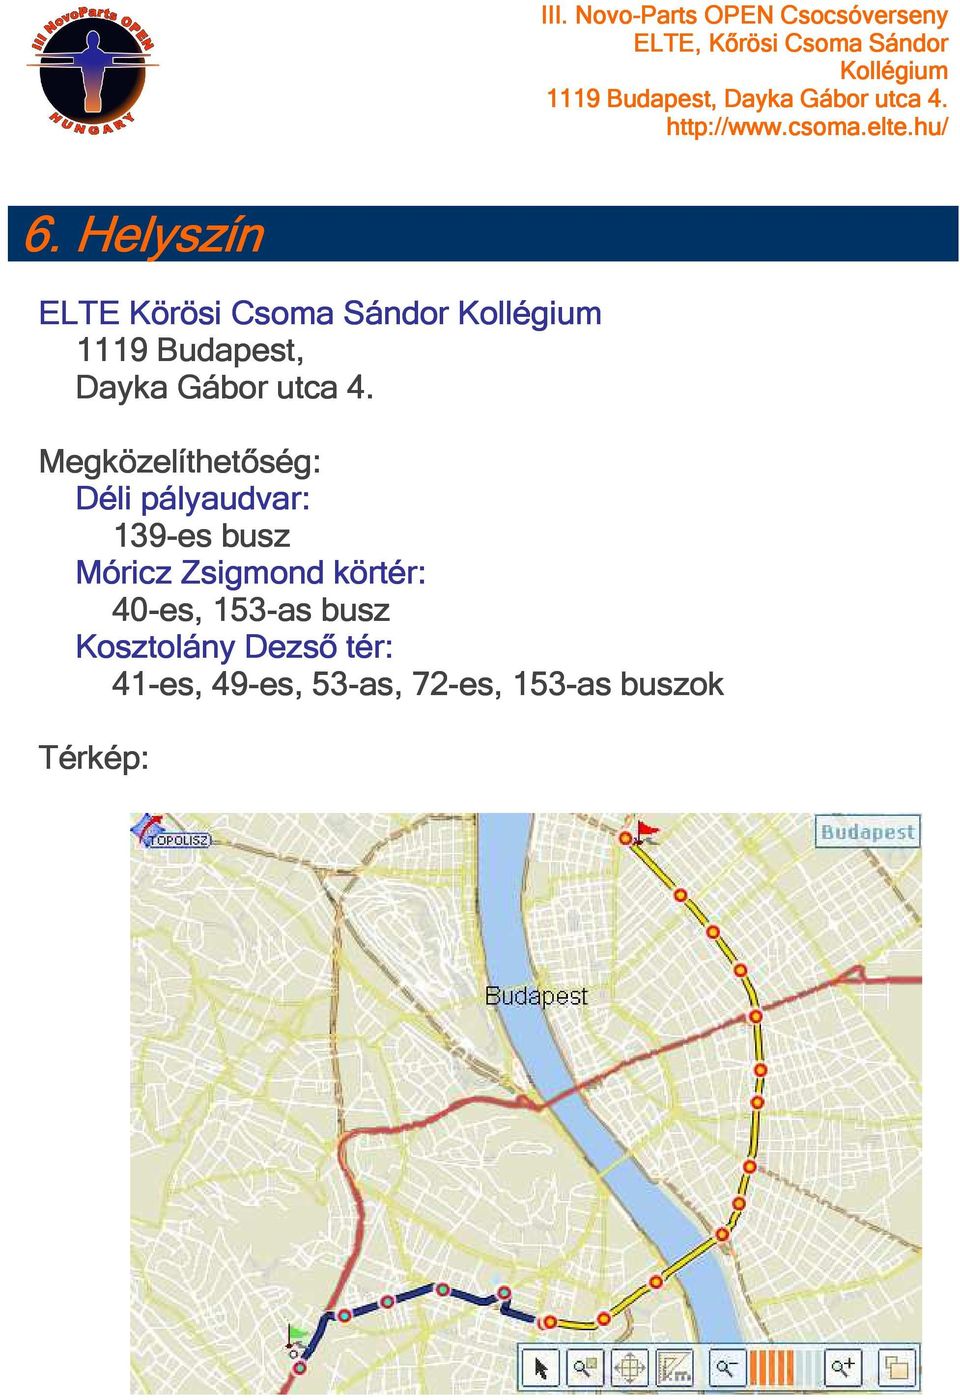 Megközelíthetőség: Déli pályaudvar: 139-es busz Móricz